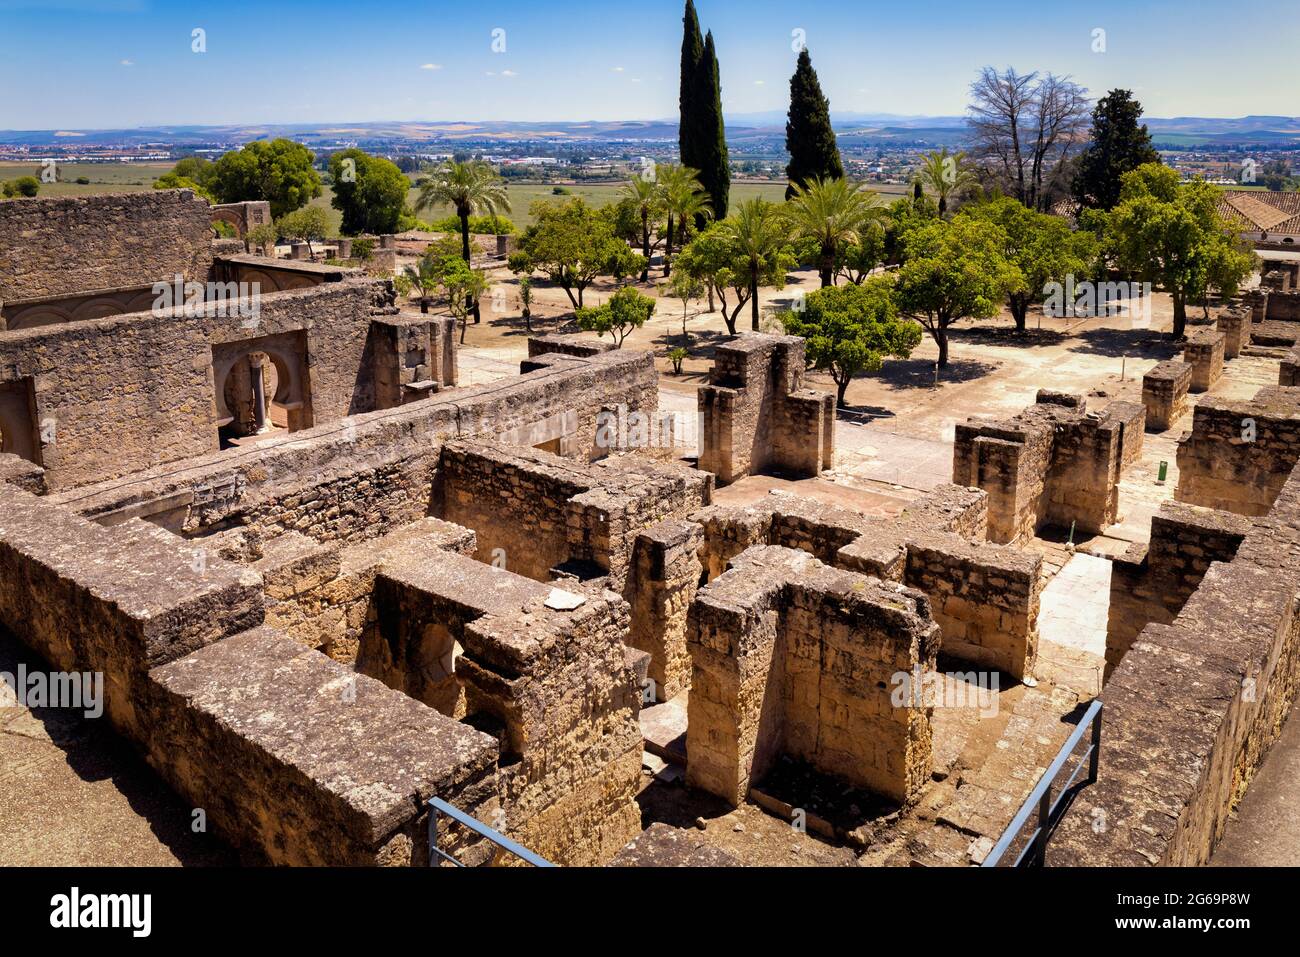 Vue globale du niveau supérieur dans le palais fortifié du Xe siècle et la ville de Medina Azahara, également connu sous le nom de Madinat al-Zahra, province de Cordoba, Spa Banque D'Images